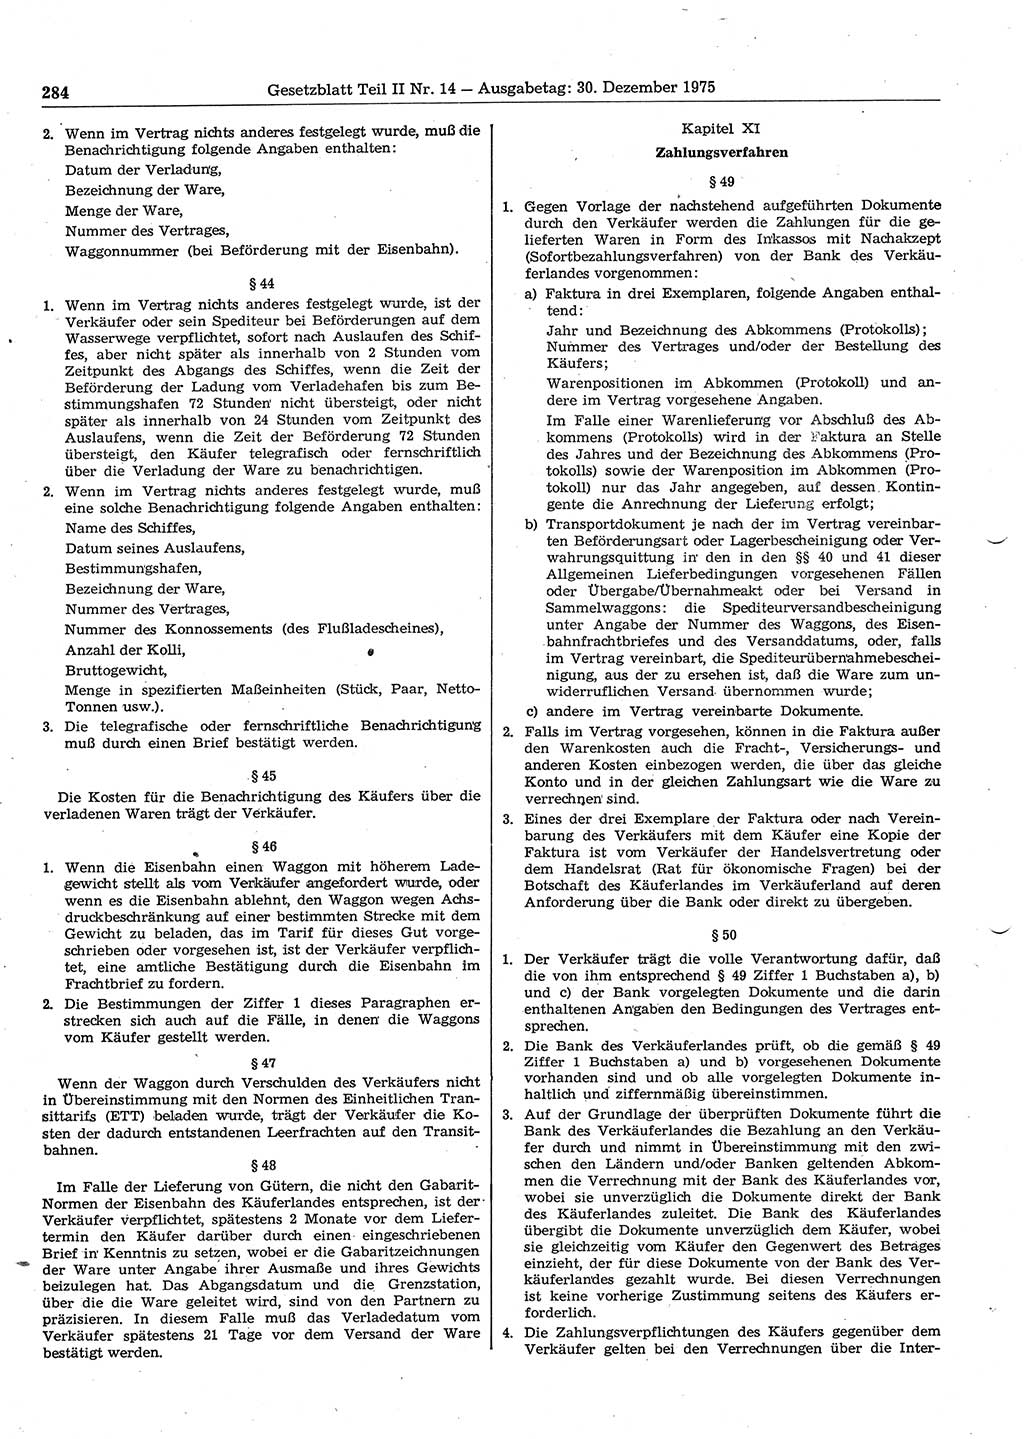 Gesetzblatt (GBl.) der Deutschen Demokratischen Republik (DDR) Teil ⅠⅠ 1975, Seite 284 (GBl. DDR ⅠⅠ 1975, S. 284)